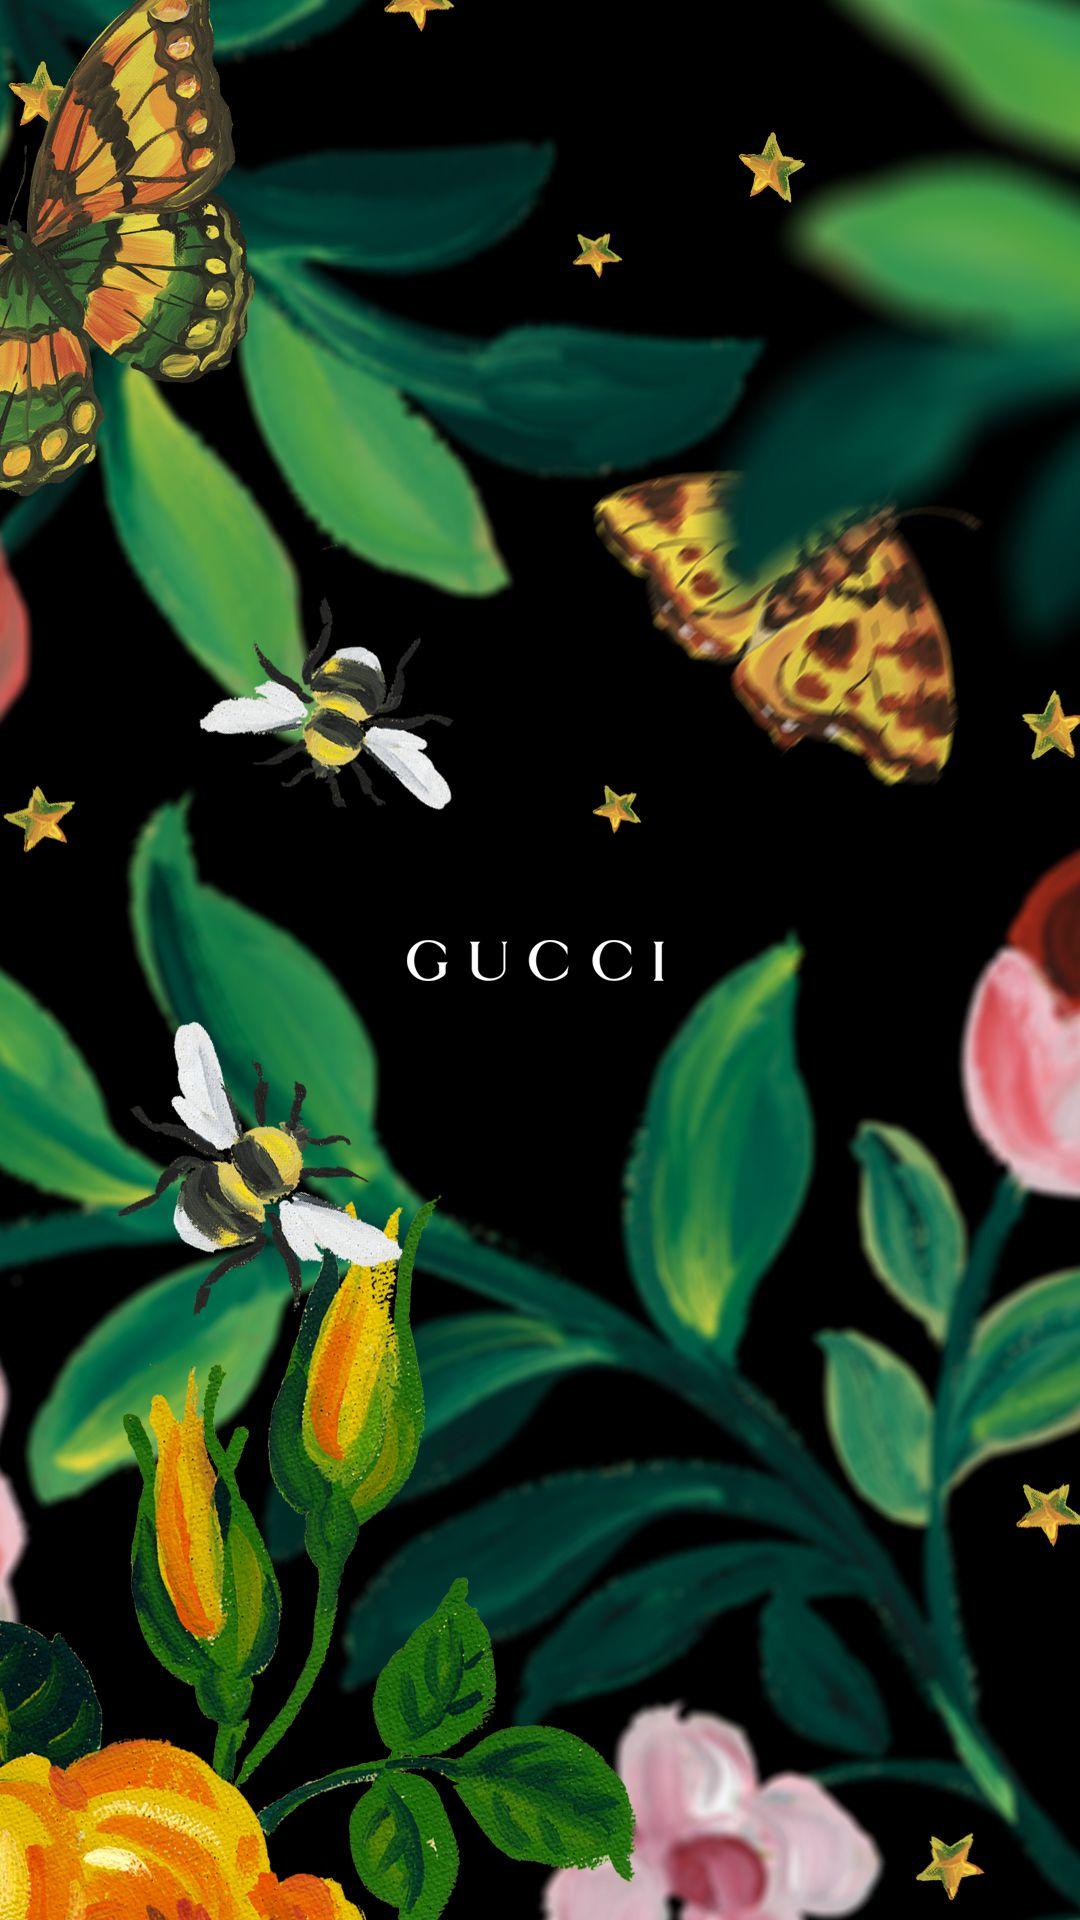 Gucci Tiger Wallpapers - Wallpaper Cave